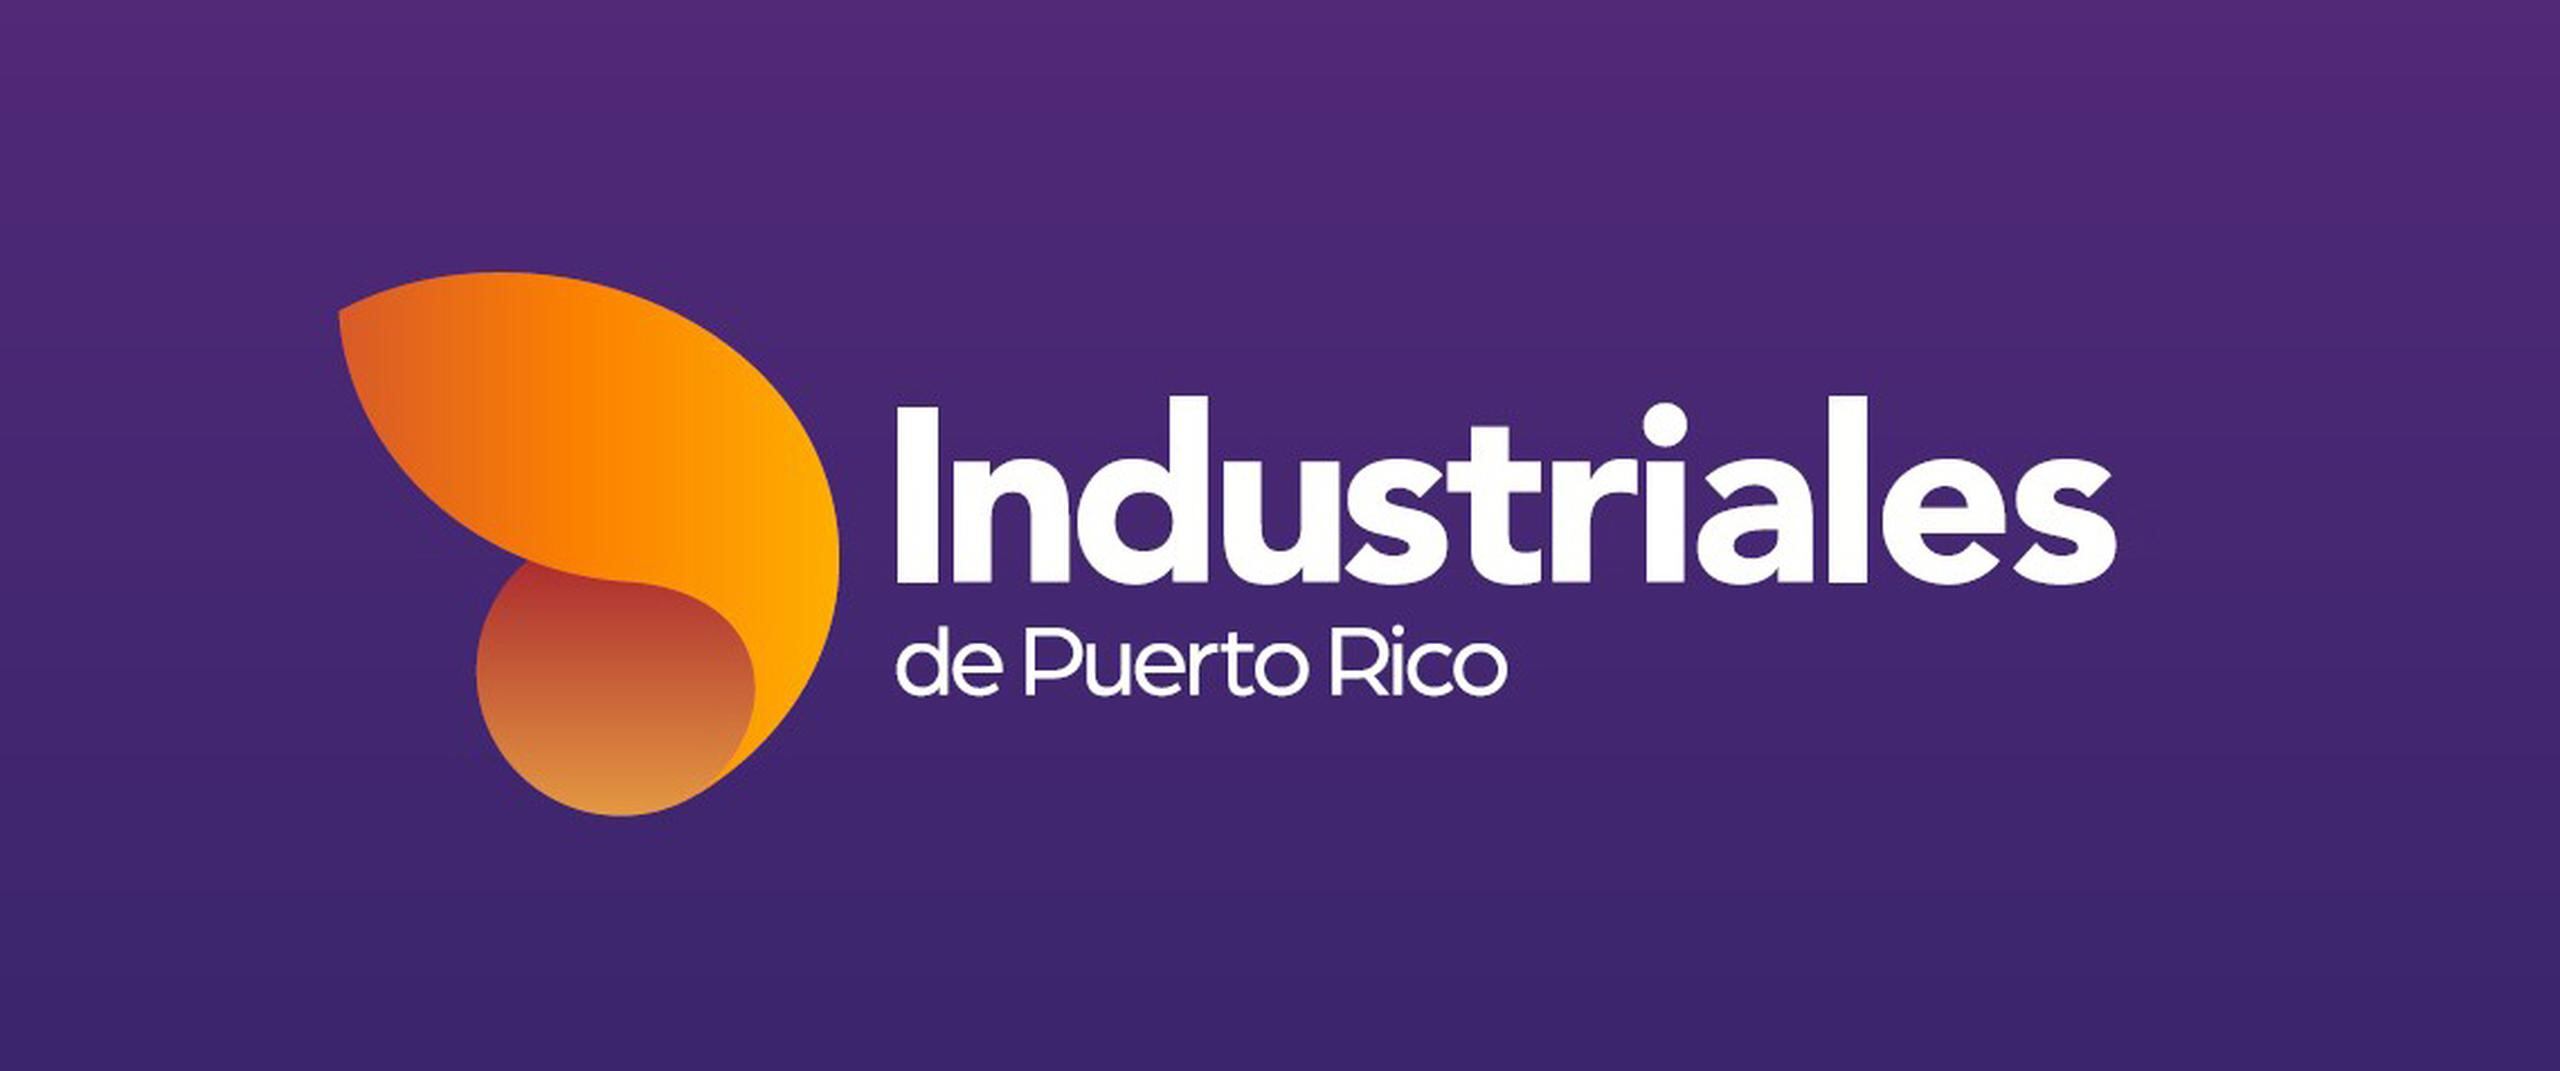 Con el cambio de identidad representado en su nuevo logo, Industriales le indica a Puerto Rico y al mundo que están preparados para el futuro y listos para liderar la próxima  transformación de la isla.